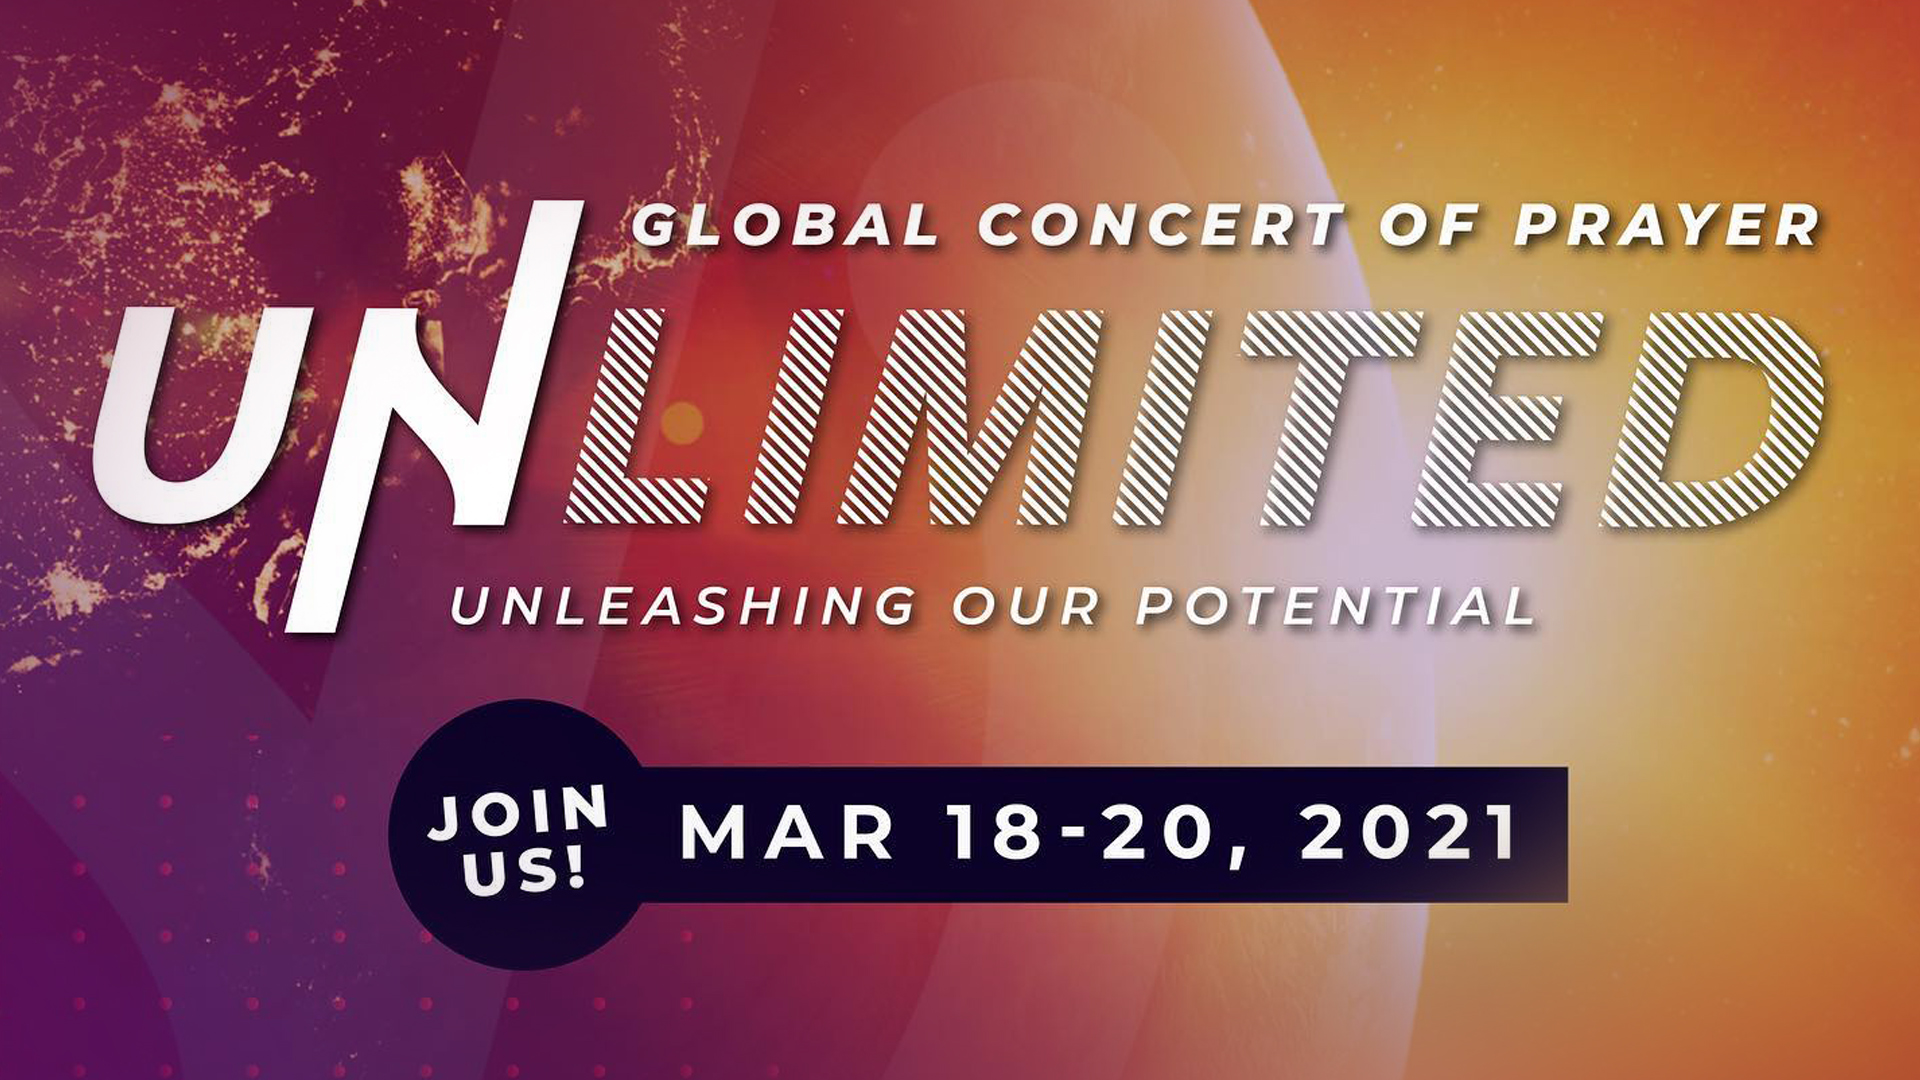 Молитва без границ. С 18 по 20 марта по всему миру пройдёт Глобальный молитвенный концерт Unlimited